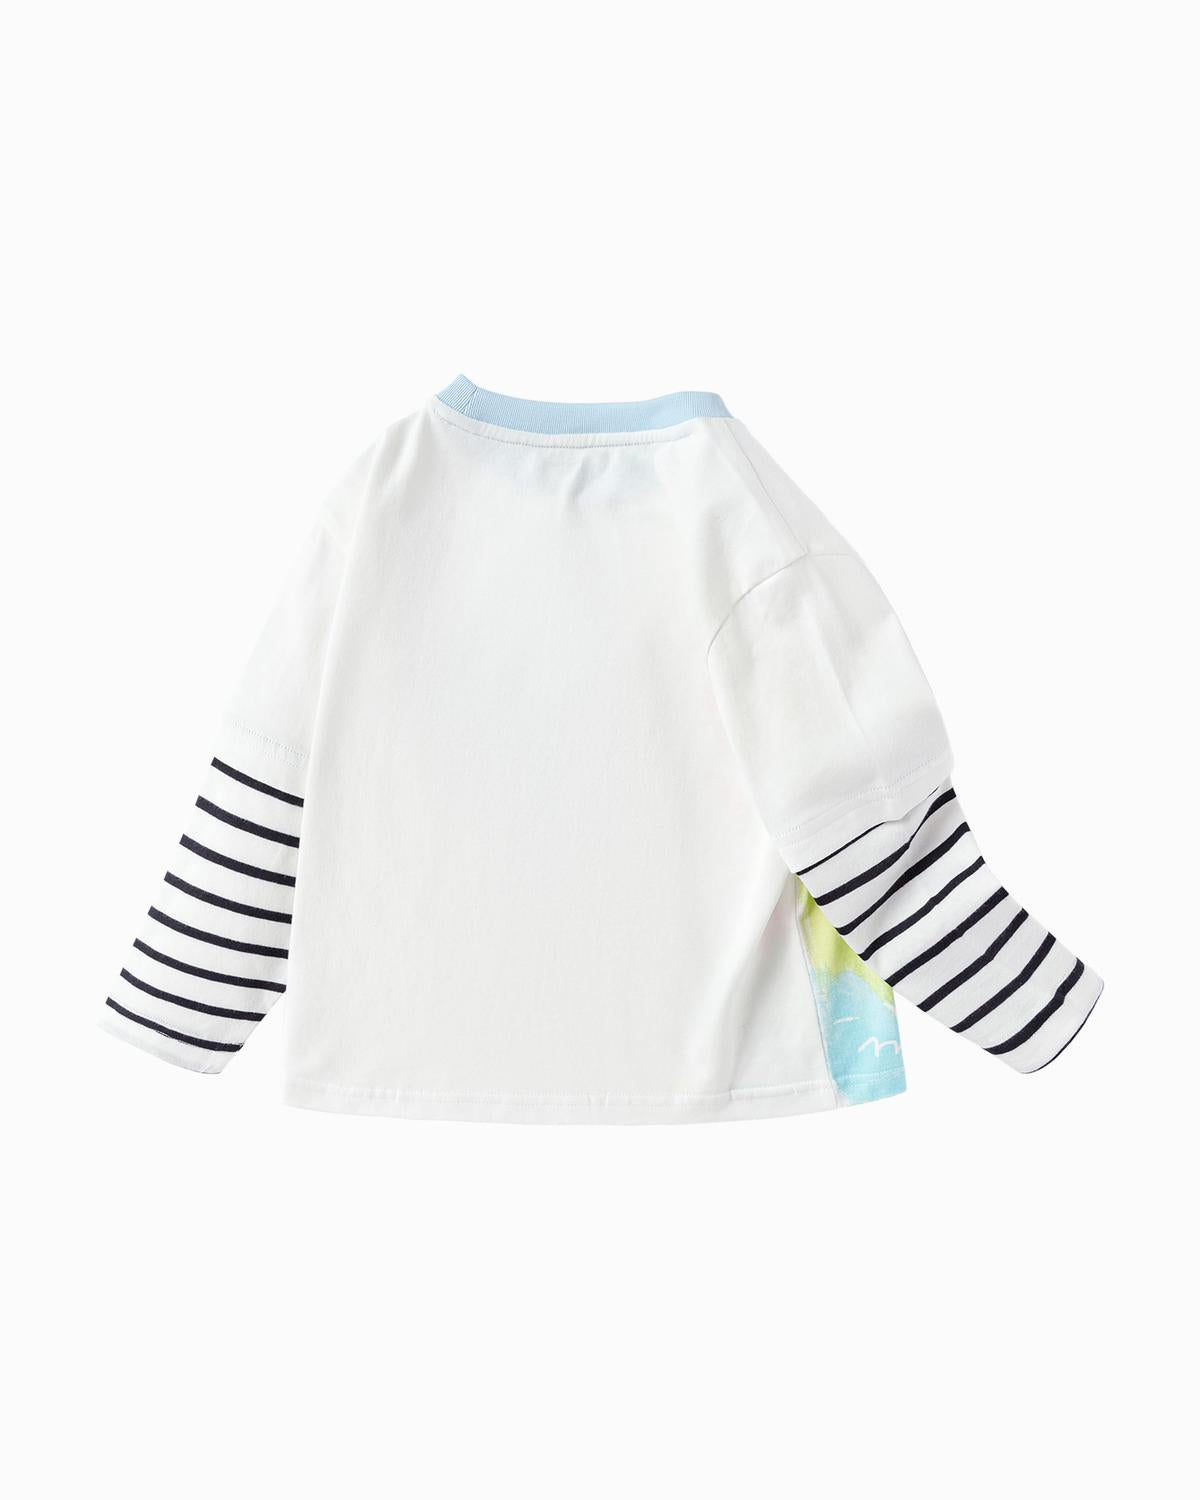 Balabala Toddler Boy Spring Knitted Long Sleeve T-shirt